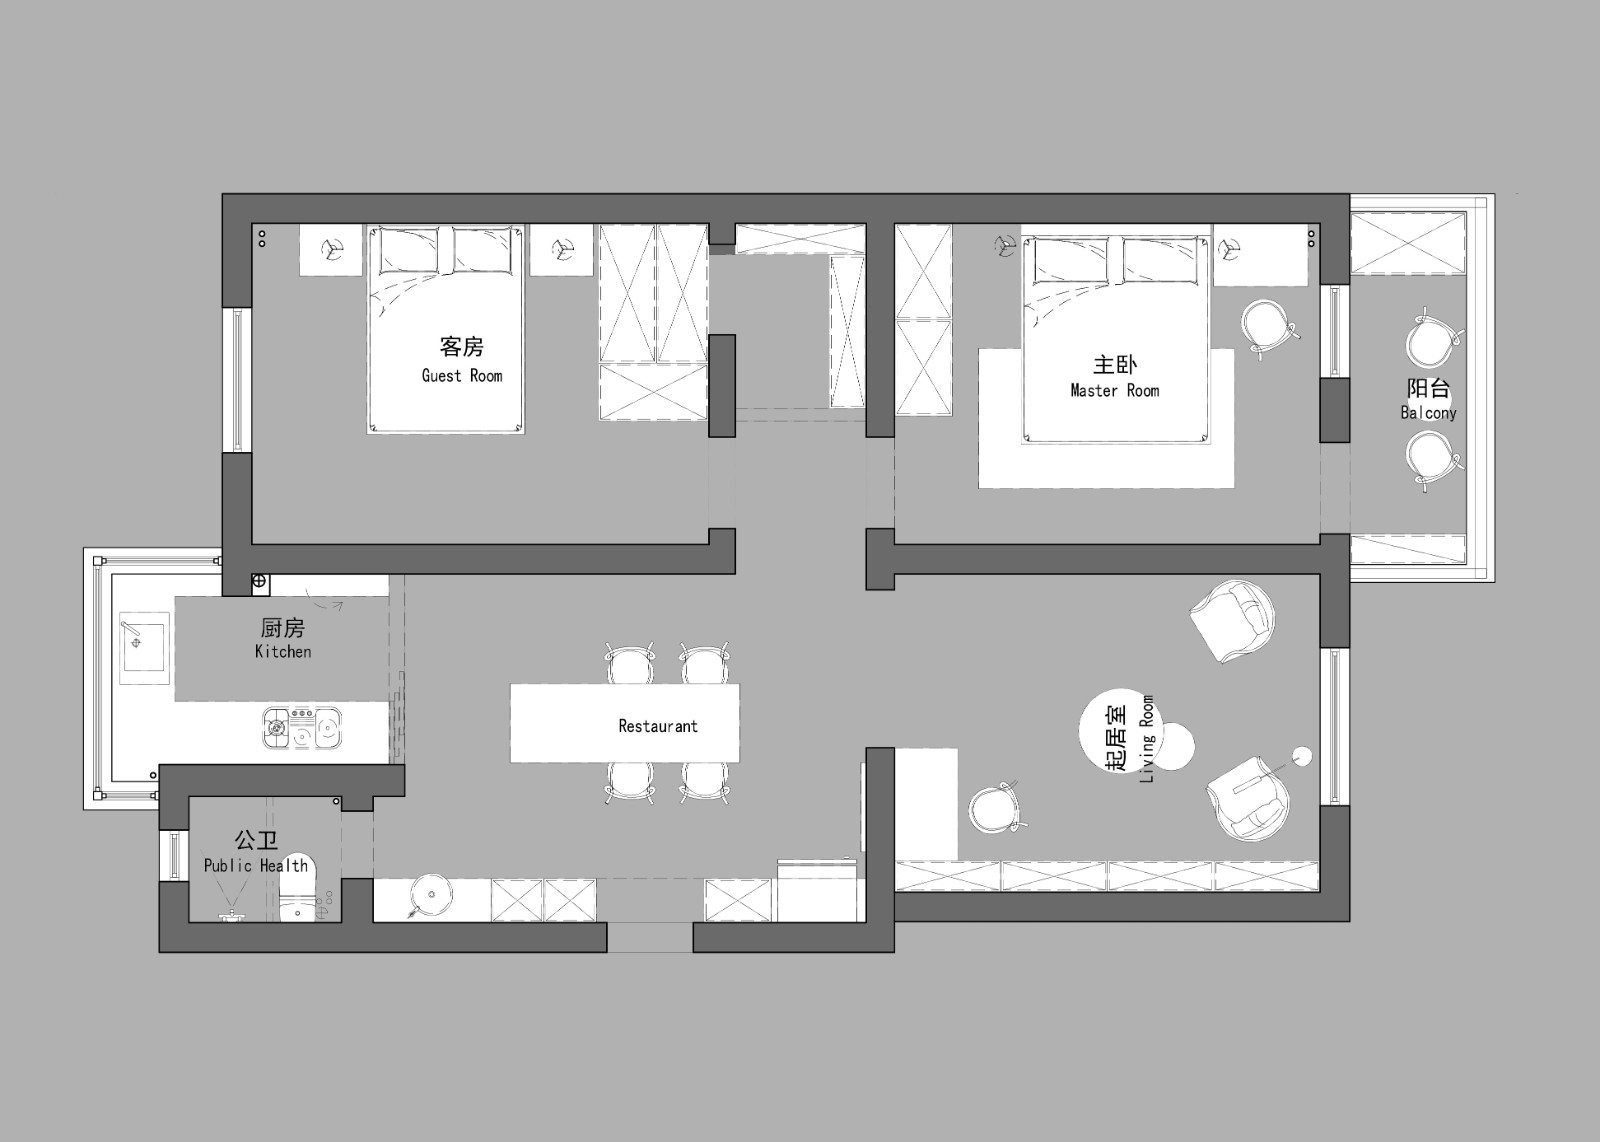 108现代三房装修效果图,理想生活的现实化装修案例效果图-美广网(图1)